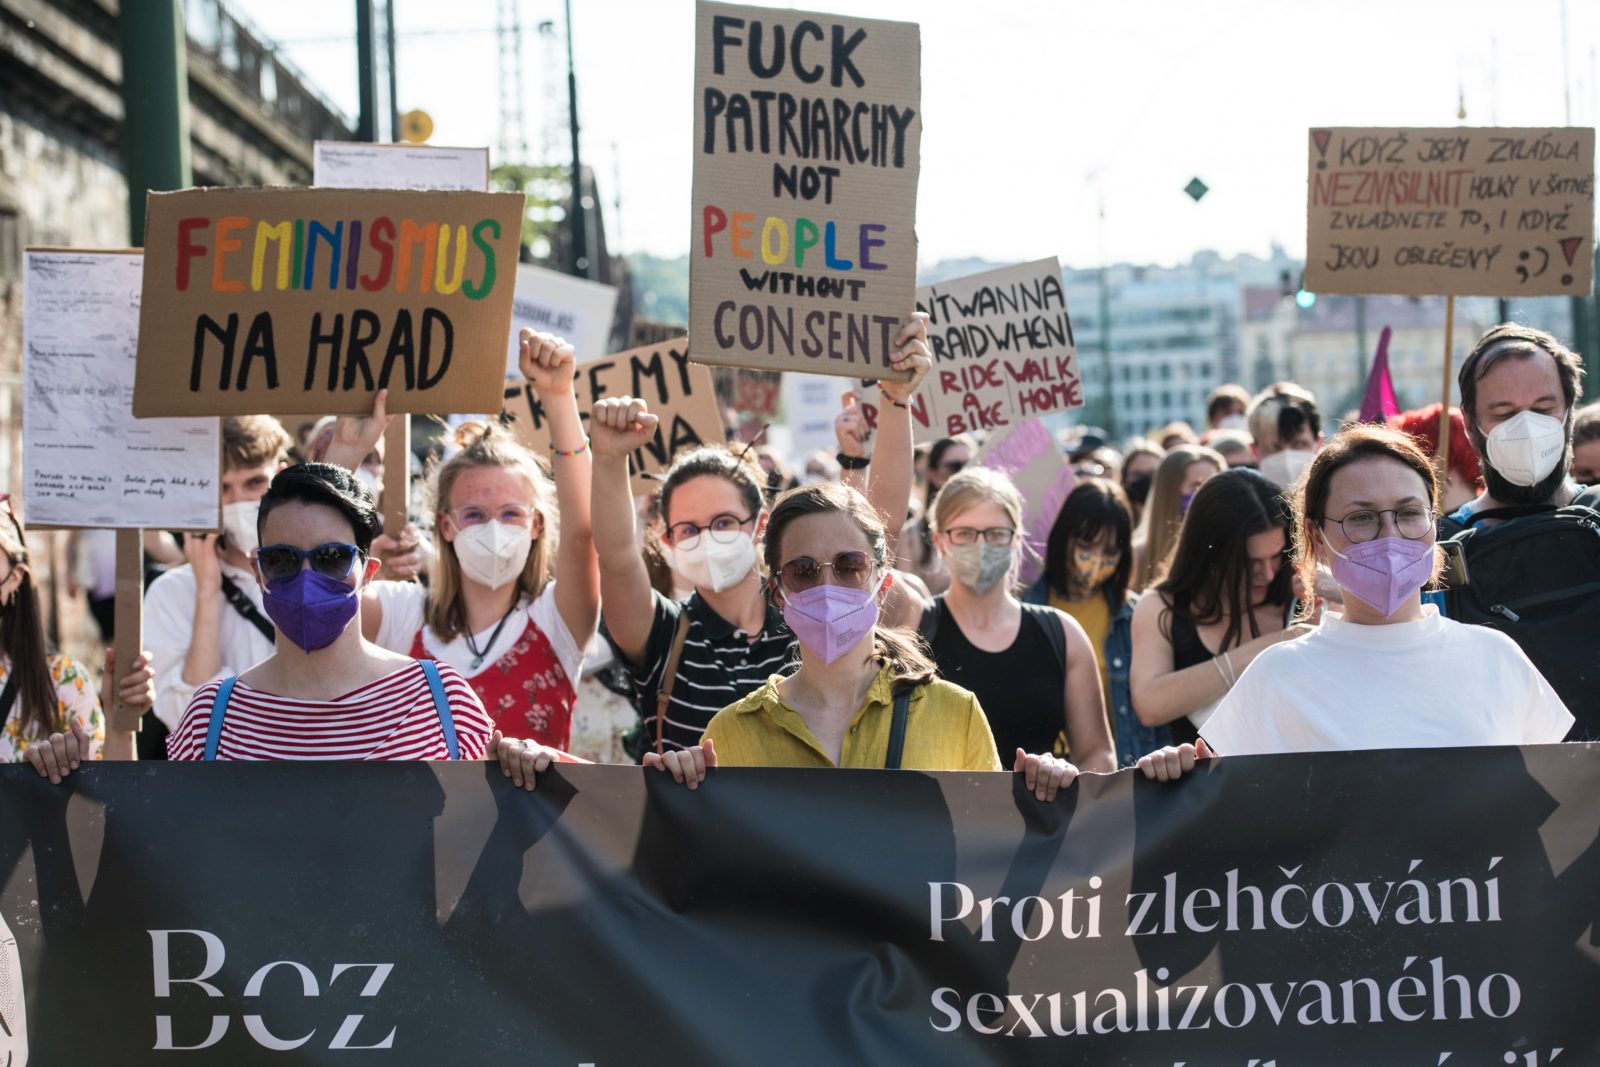 OBRAZEM: ‚Ne znamená ne.‘ V Praze lidé demonstrovali proti zlehčování sexuálního násilí